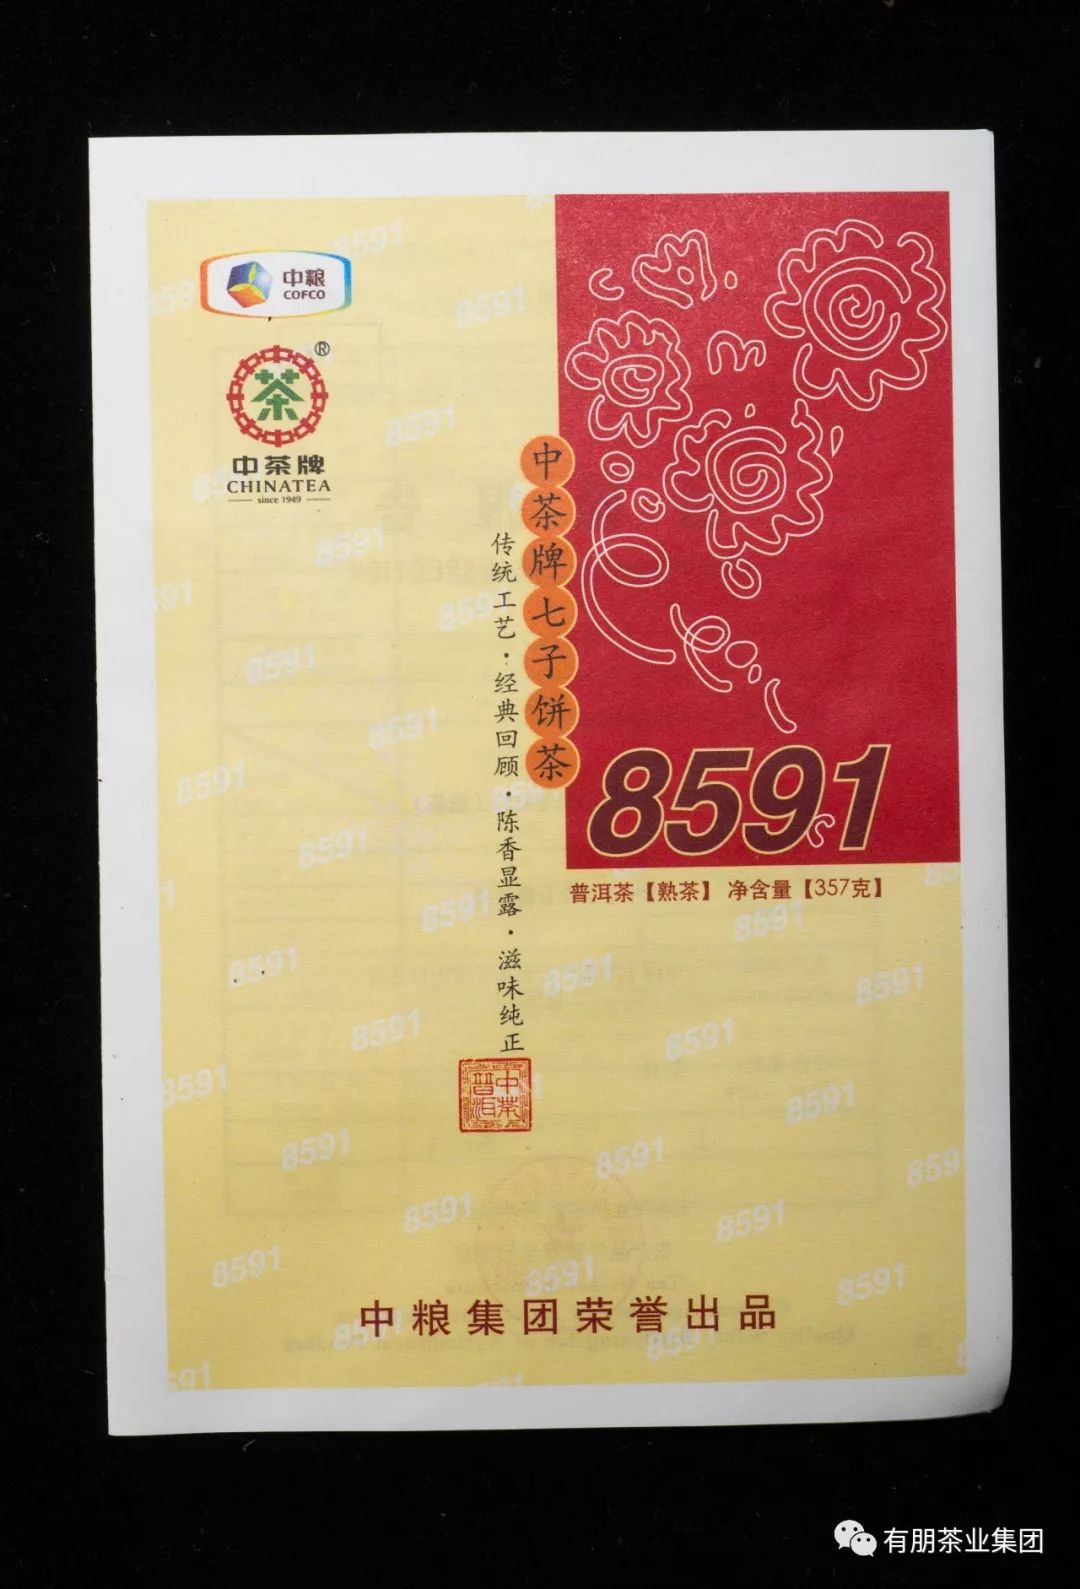 【经典回顾产品】中茶2014年8591熟饼